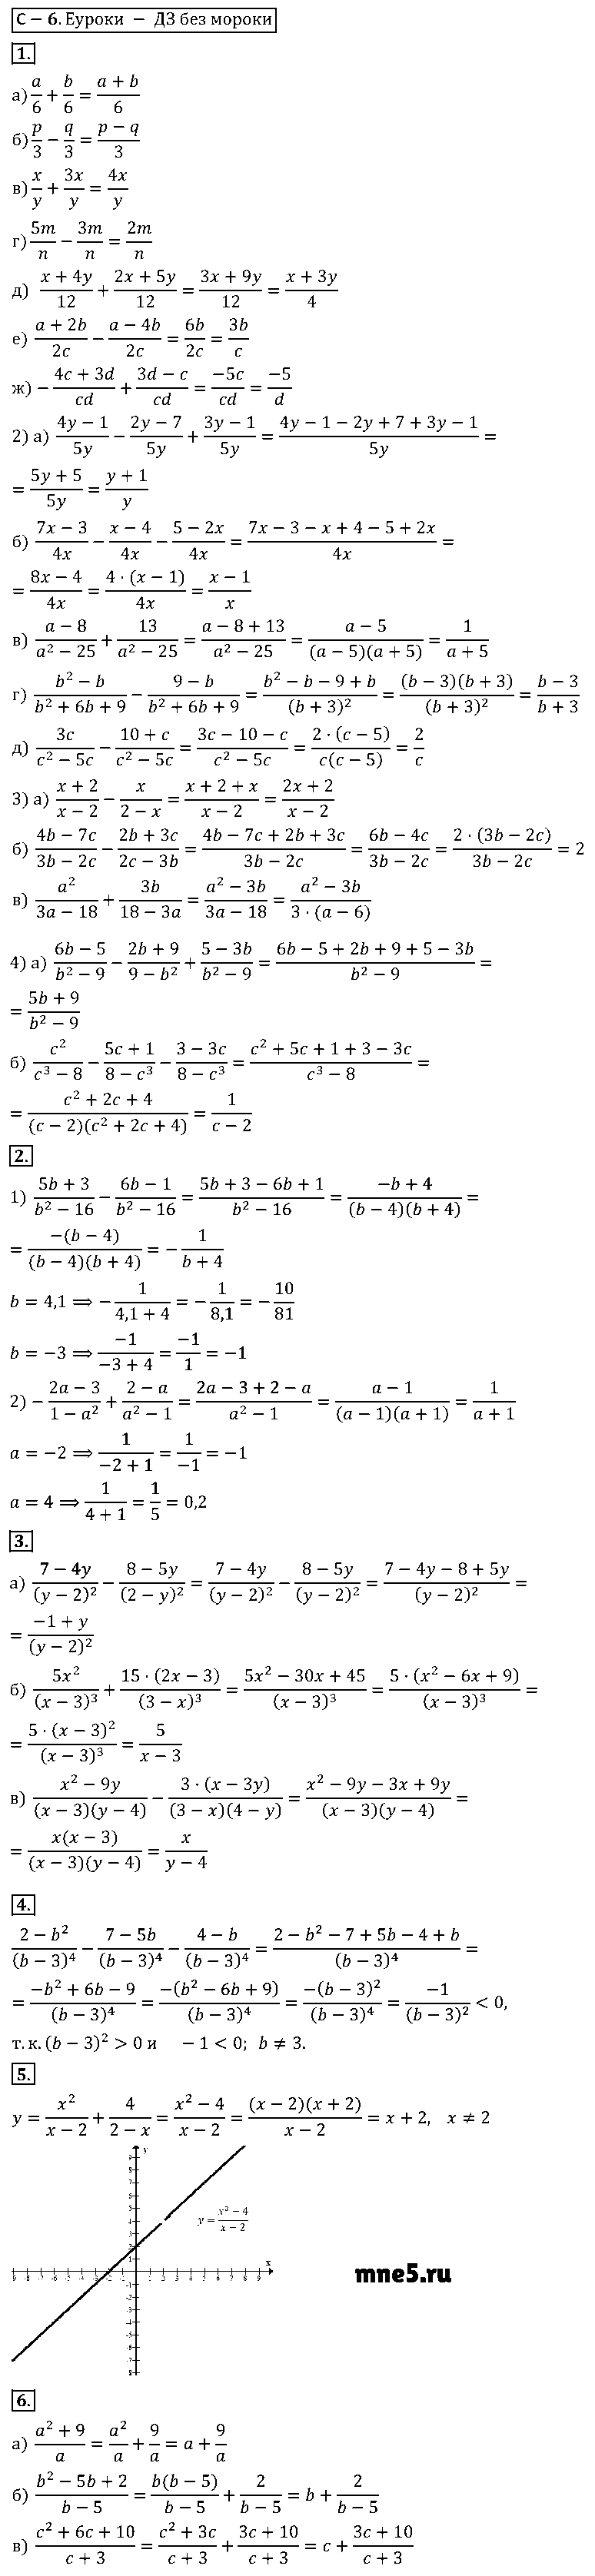 ГДЗ Алгебра 8 класс - С-6(6). Сложение и вычитание дробей с одинаковыми знаменателями